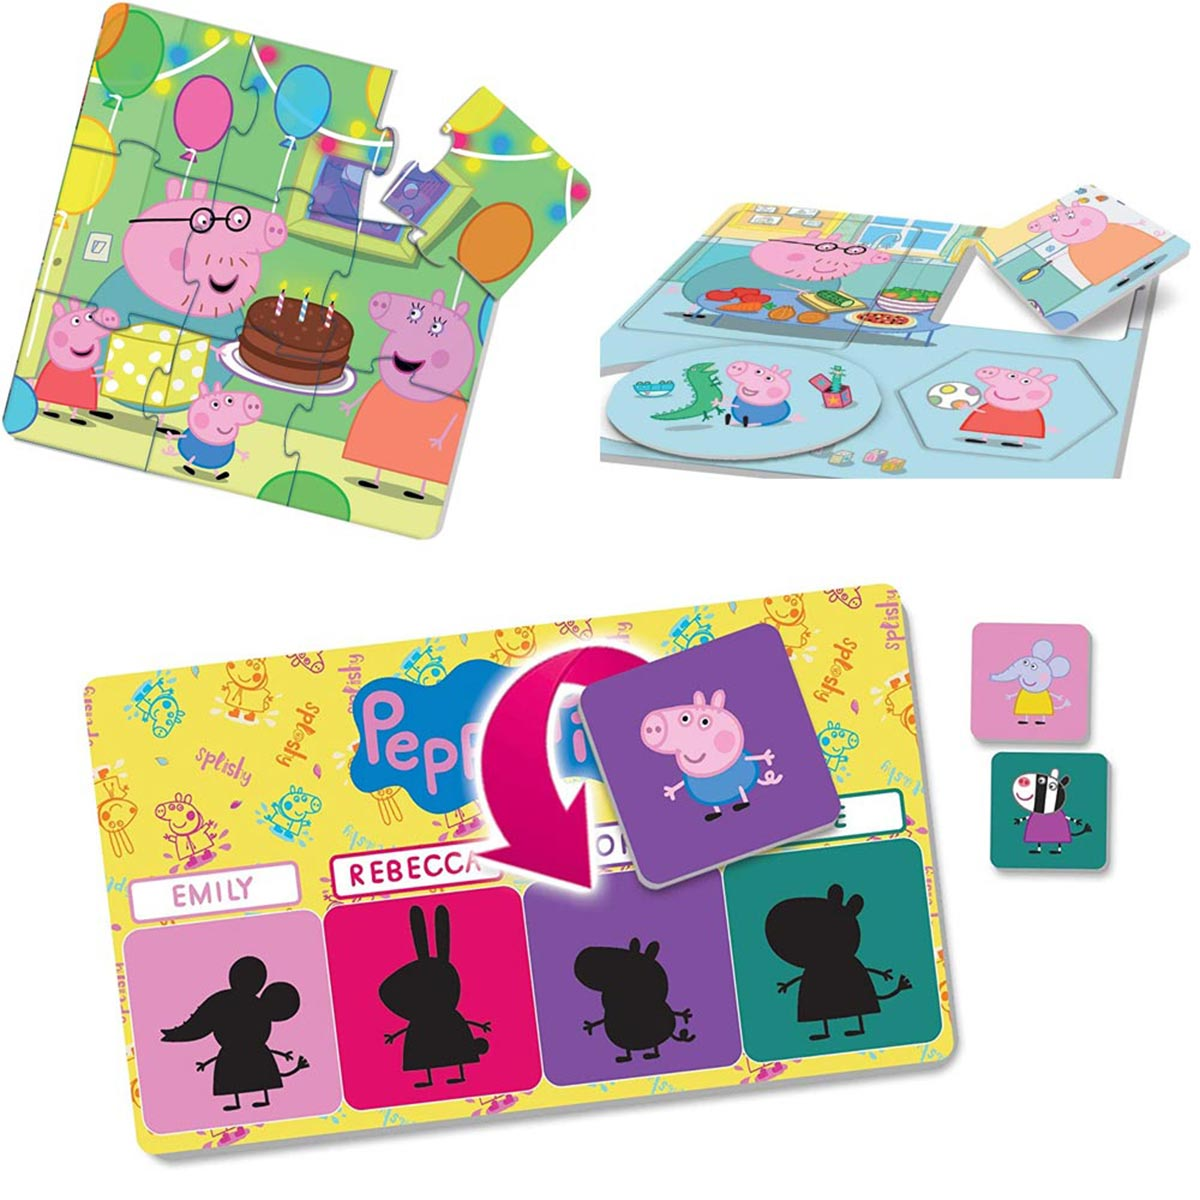 PEPPA PIG Lernspielsammlung mehrfarbig Spielen, mit Pig Lisciani von Lernspiele, 10 Peppa